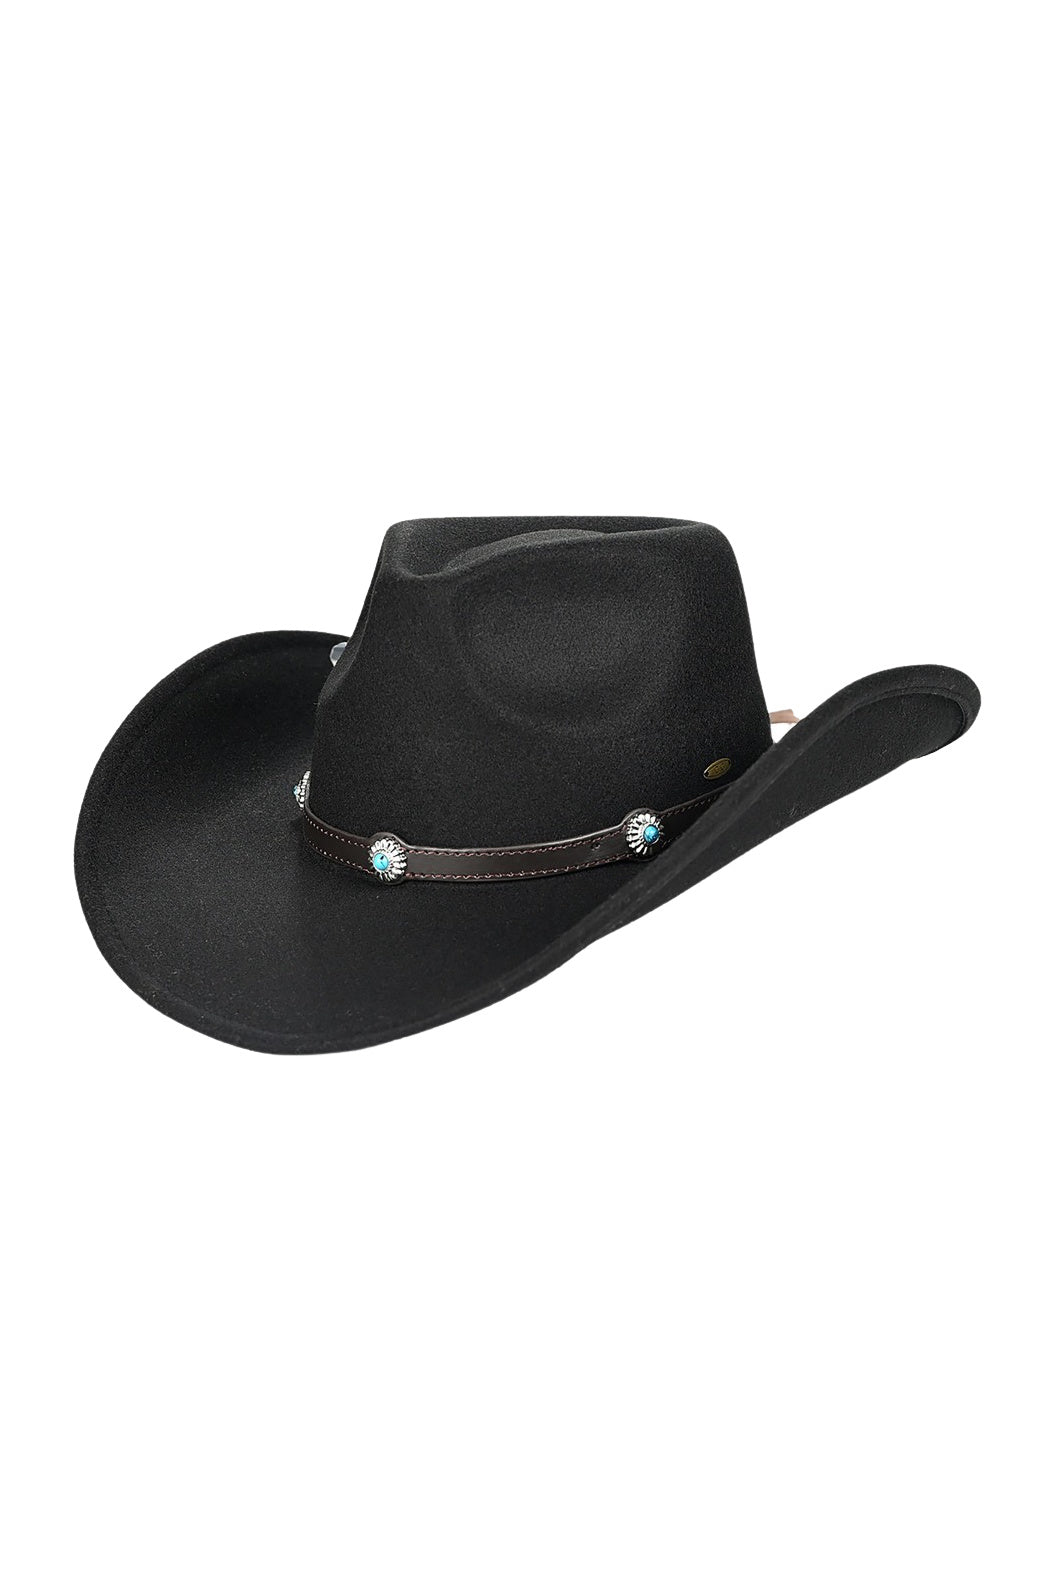 Turquoise Stone Felt  Cowboy Hat